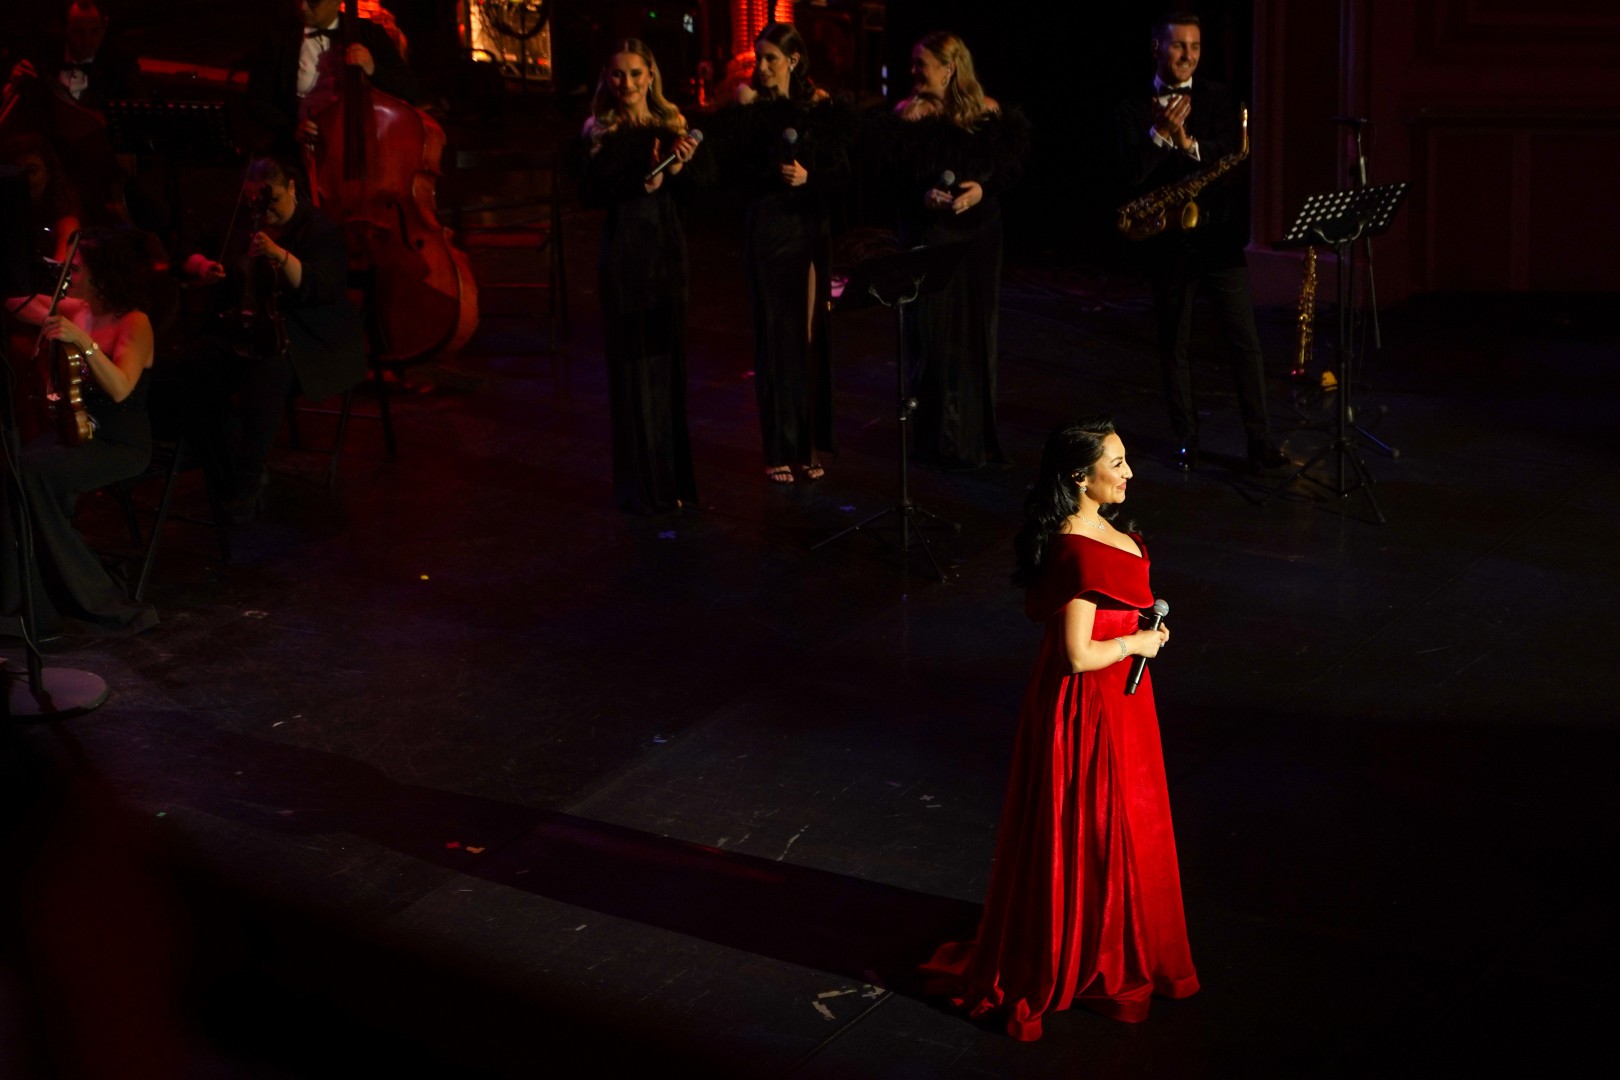 Andra at Opera Națională București in Bucharest on December 5, 2022 (147e576a77)